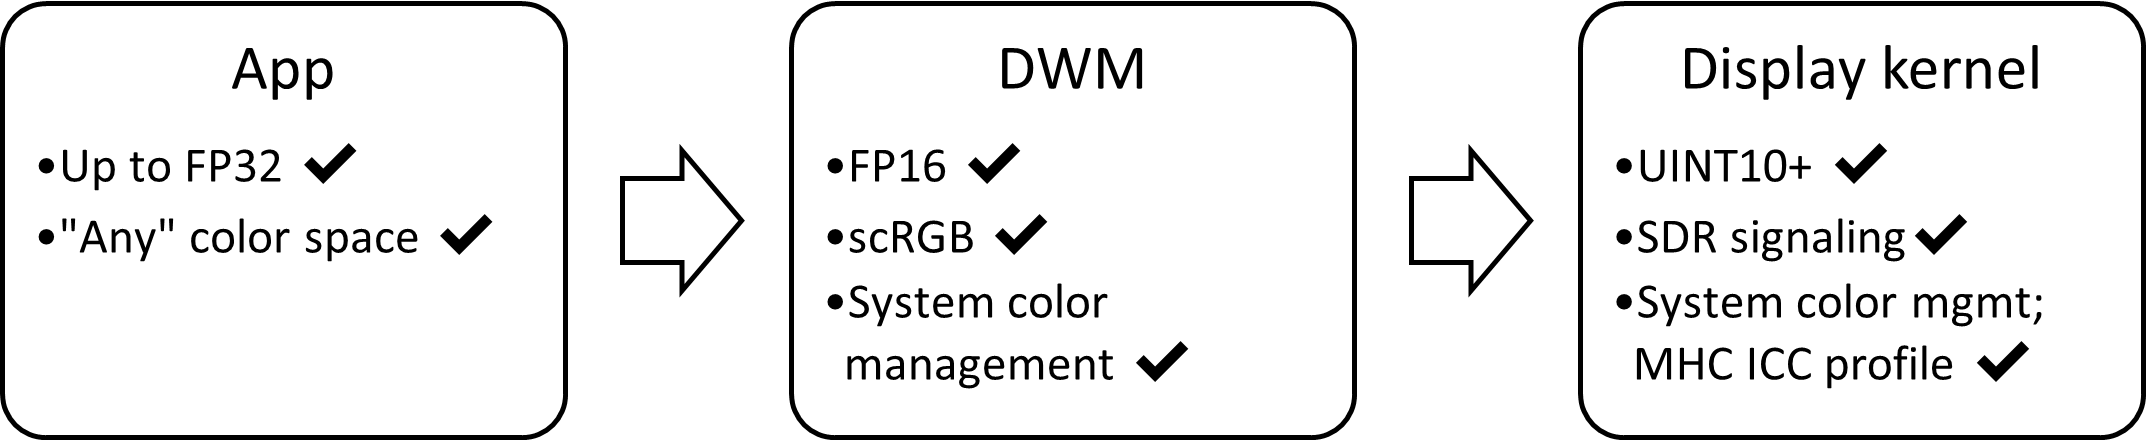 SDR AC 显示堆栈的框图：FP16、scRGB，具有自动颜色管理